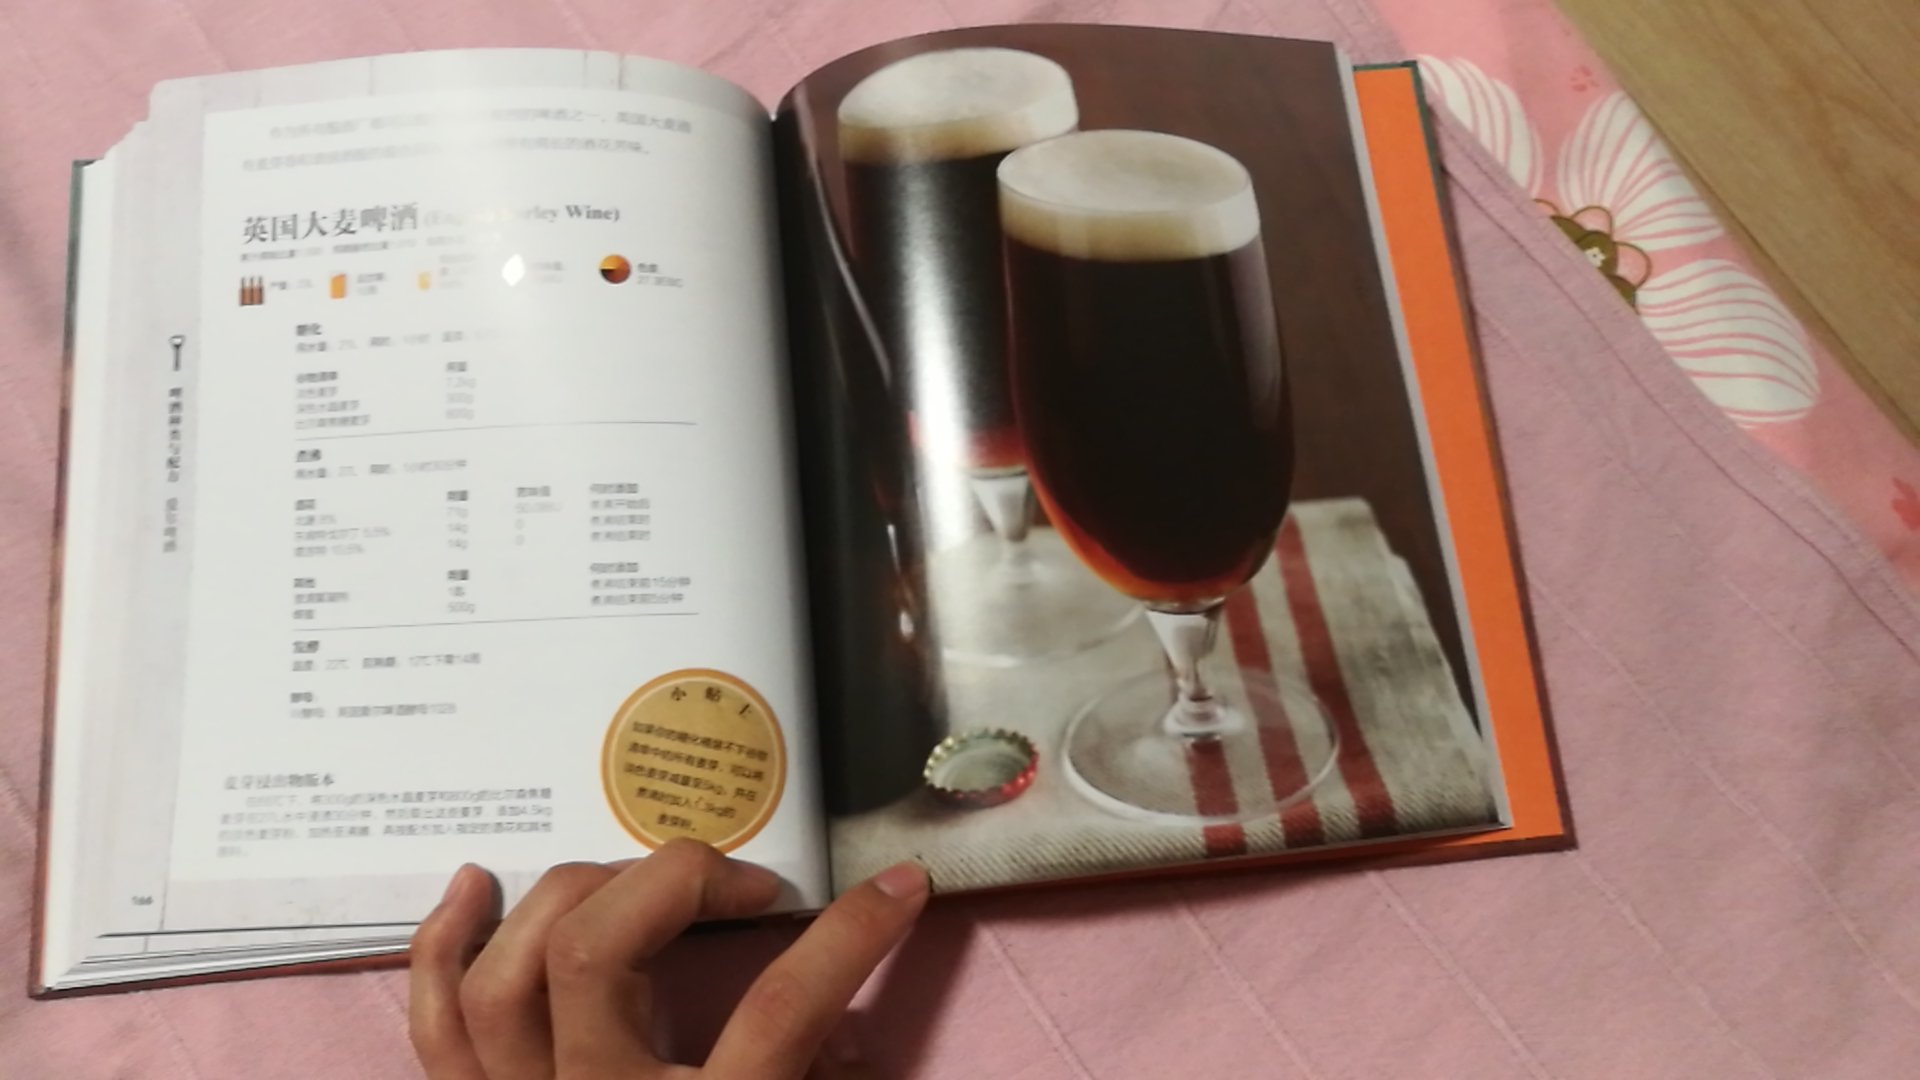 DK出品必属精品！这本啤酒自酿入门能了解啤酒的种类，自酿方面还是有一定的要求，一般人没有这个条件。这次用纸盒子包装，书的品相保护的很好。